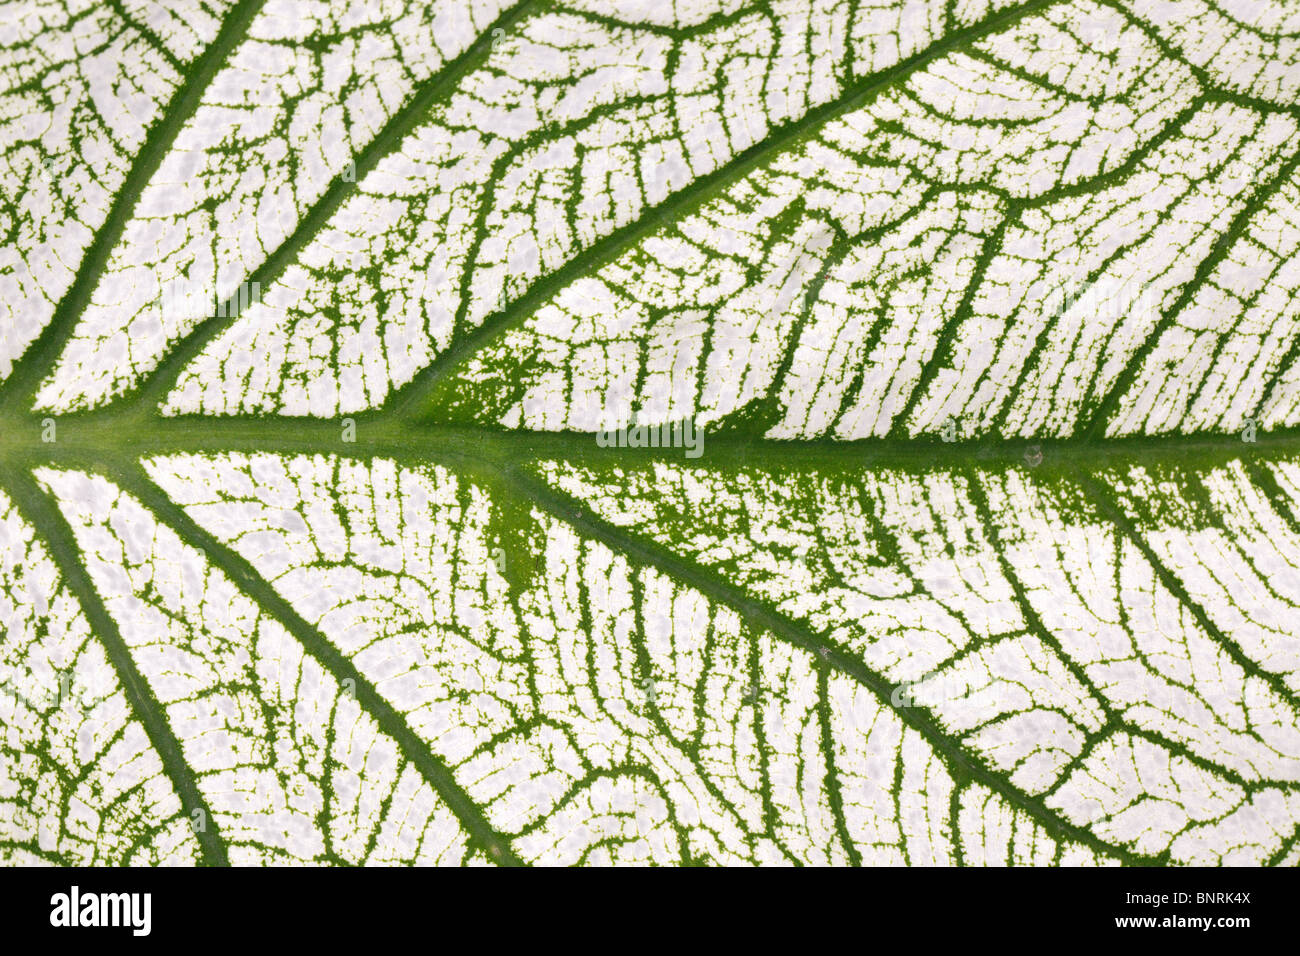 macro of tropical white caladium leaf background Stock Photo